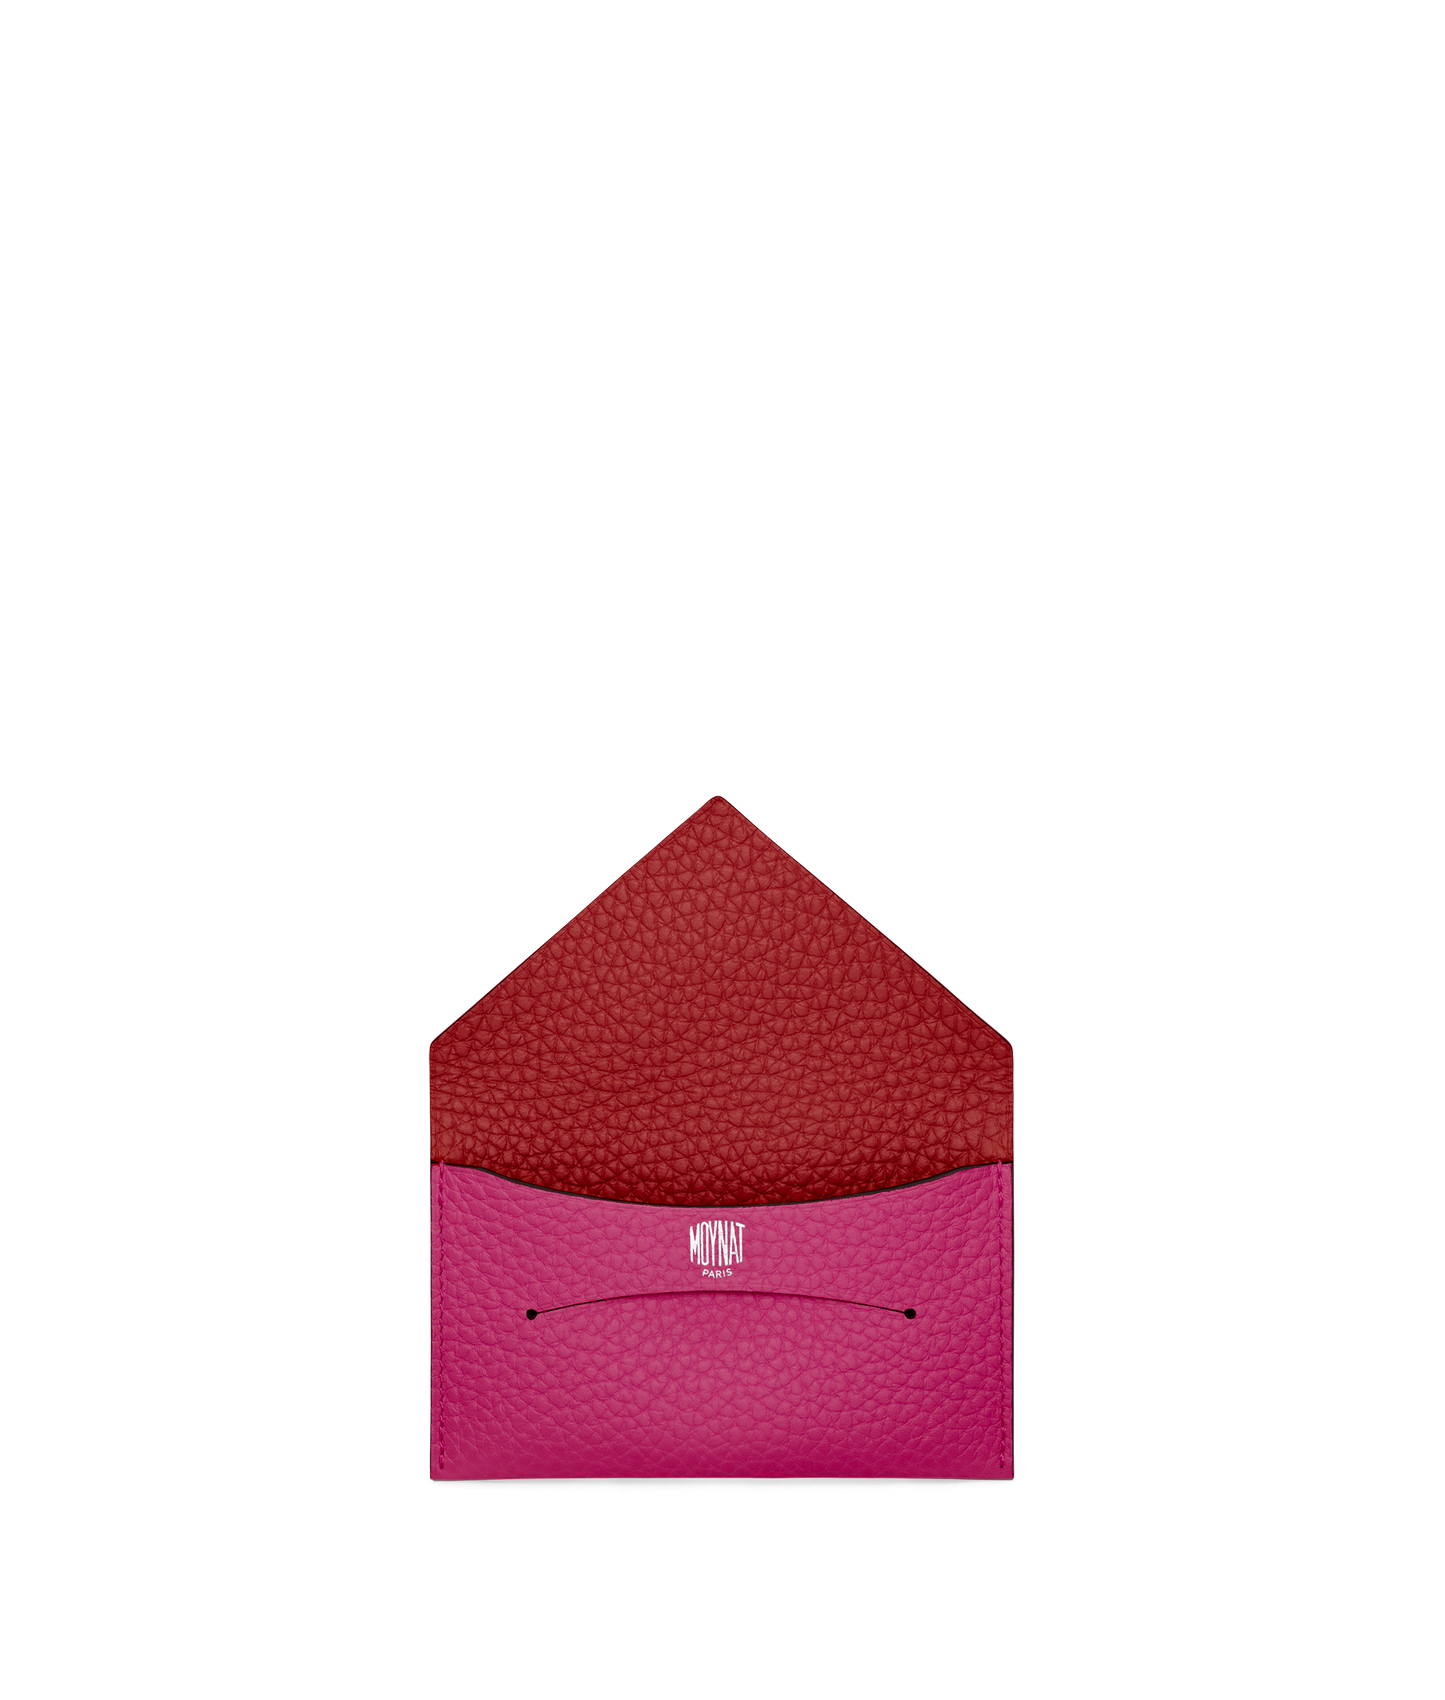 MOYNAT Enveloppe Pouch Leather Pink W18cm H12cm D1cm